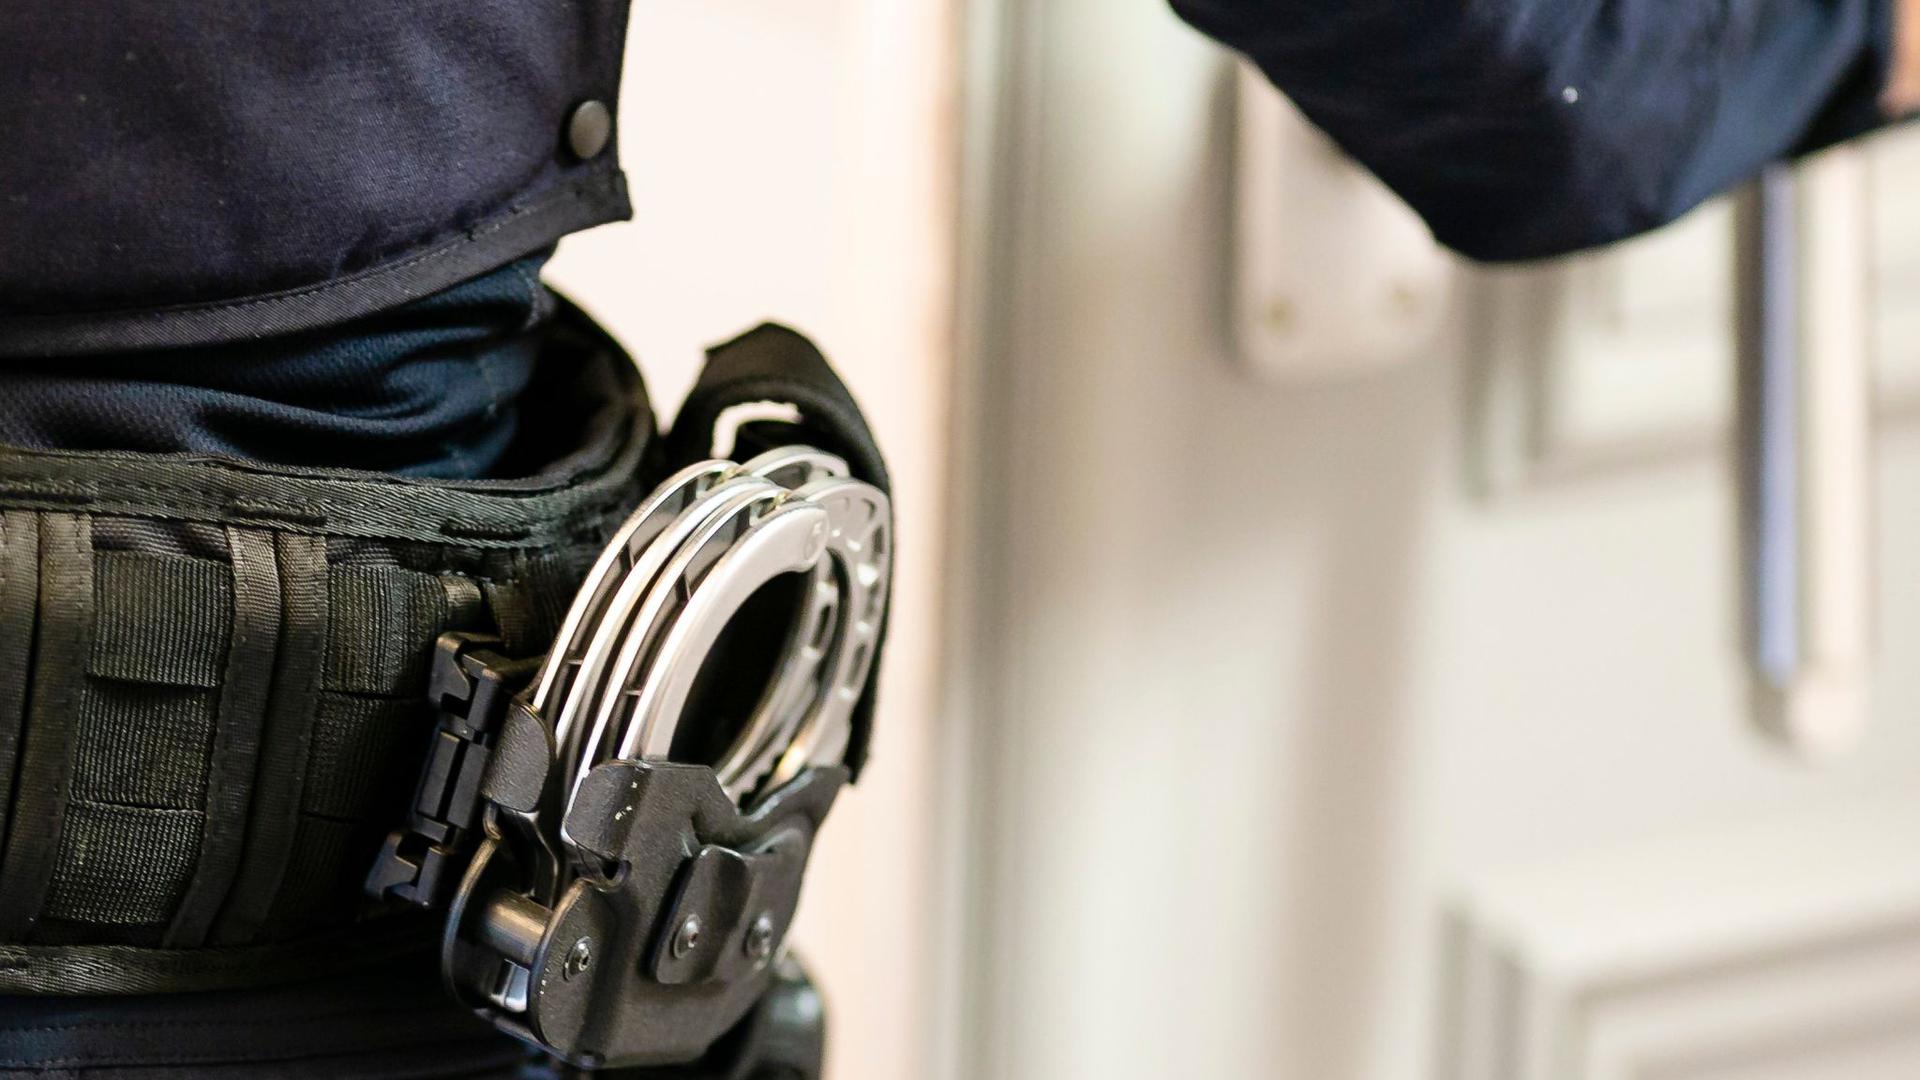 Handschellen sind an einem Gürtel eines Justizvollzugsbeamten befestigt.